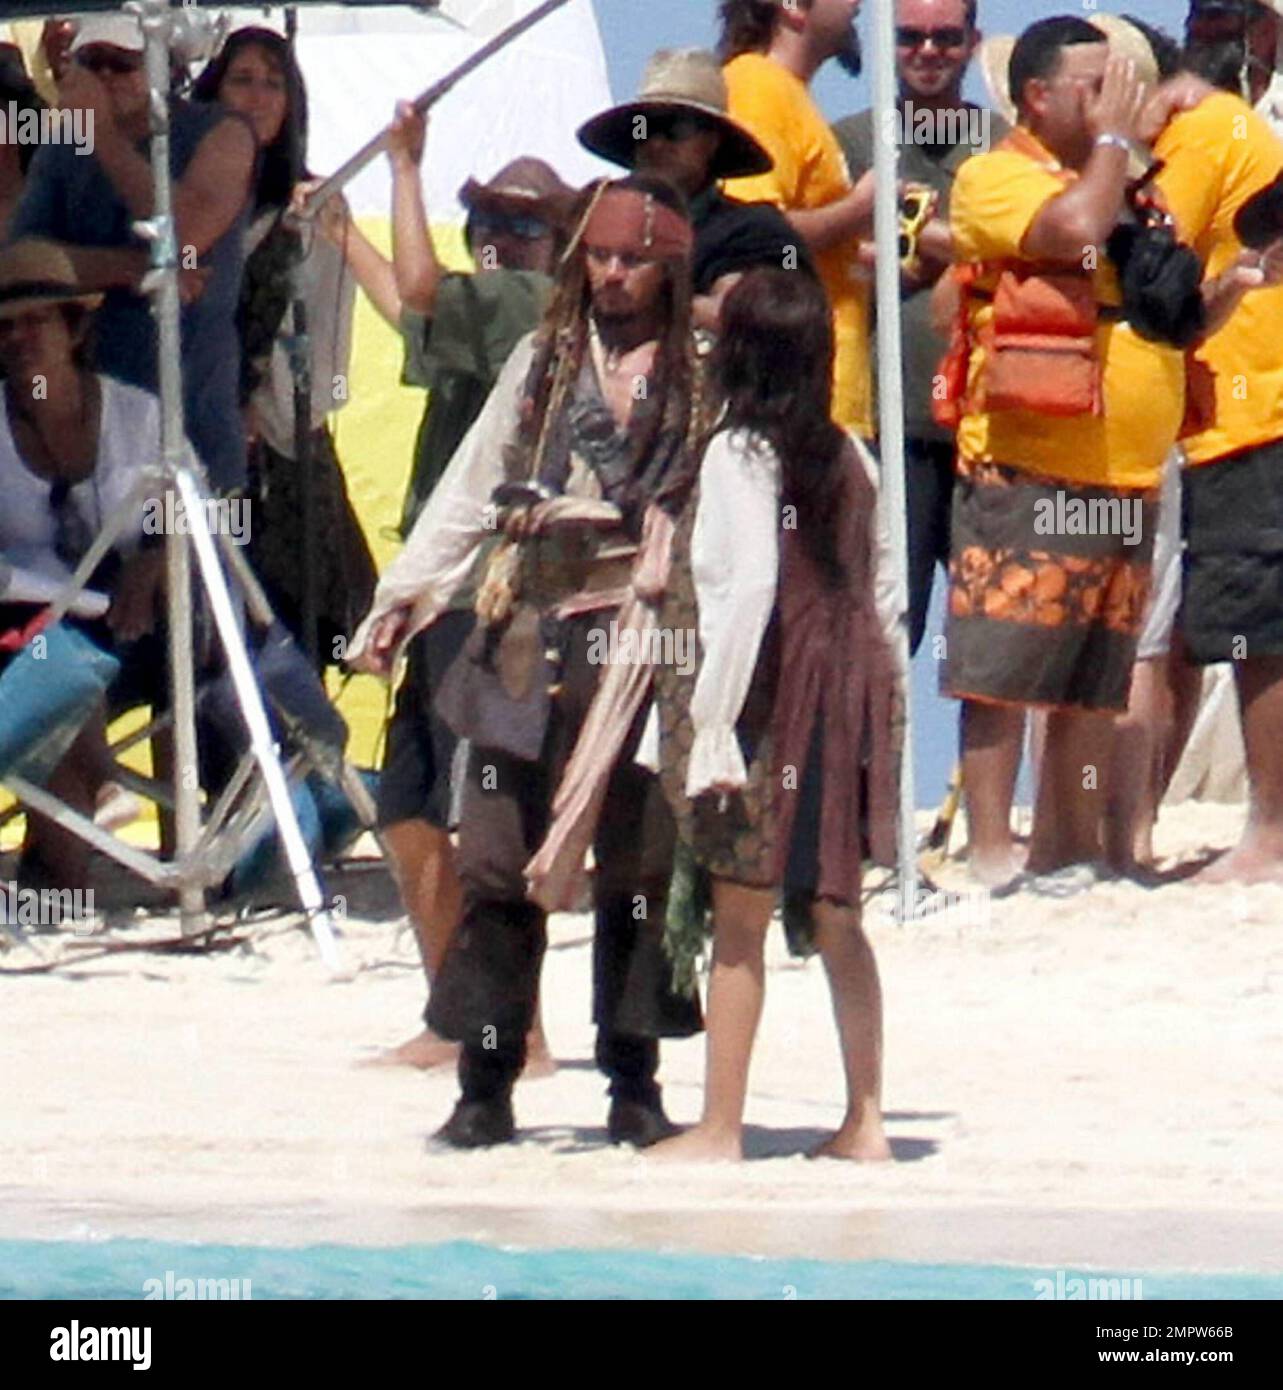 EXCLUSIF !! Johnny Depp et Penelope Cruz filent une scène de bisous sur une  île déserte pour la suite Disney à venir, « Pirates of the Caribbean: On  Stranger Tides ». Depp,